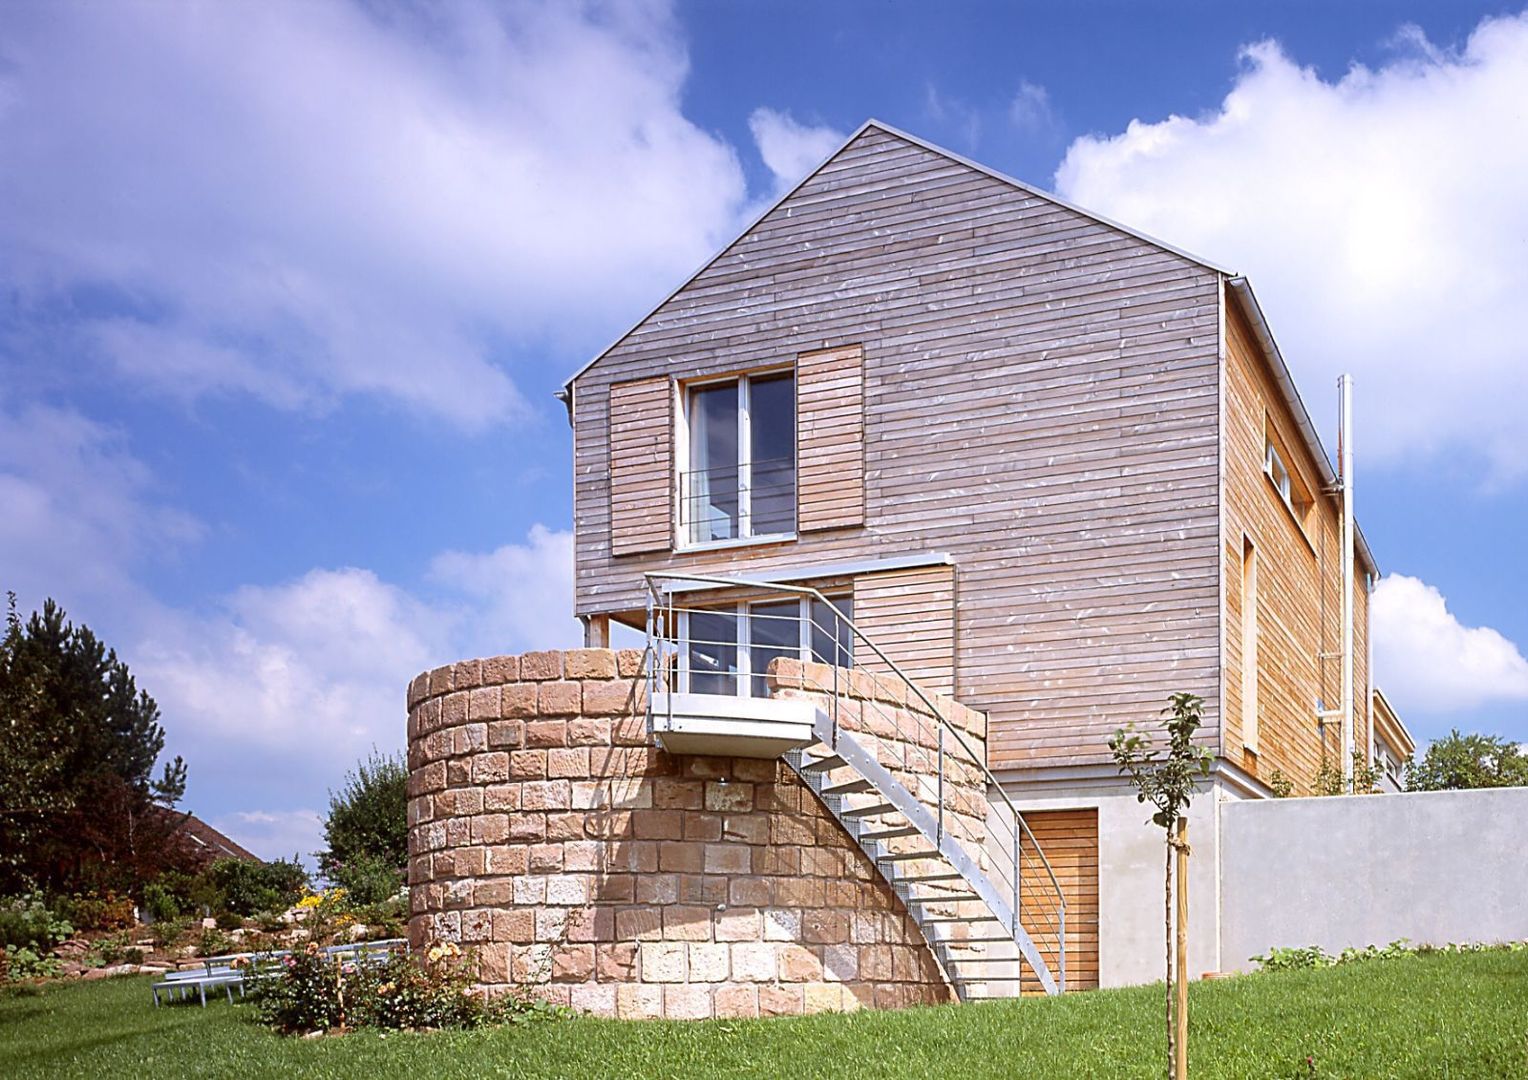 Einfamilien Wohnhaus in Holzständerkonstruktion, Jarcke Architekten Jarcke Architekten Будинки